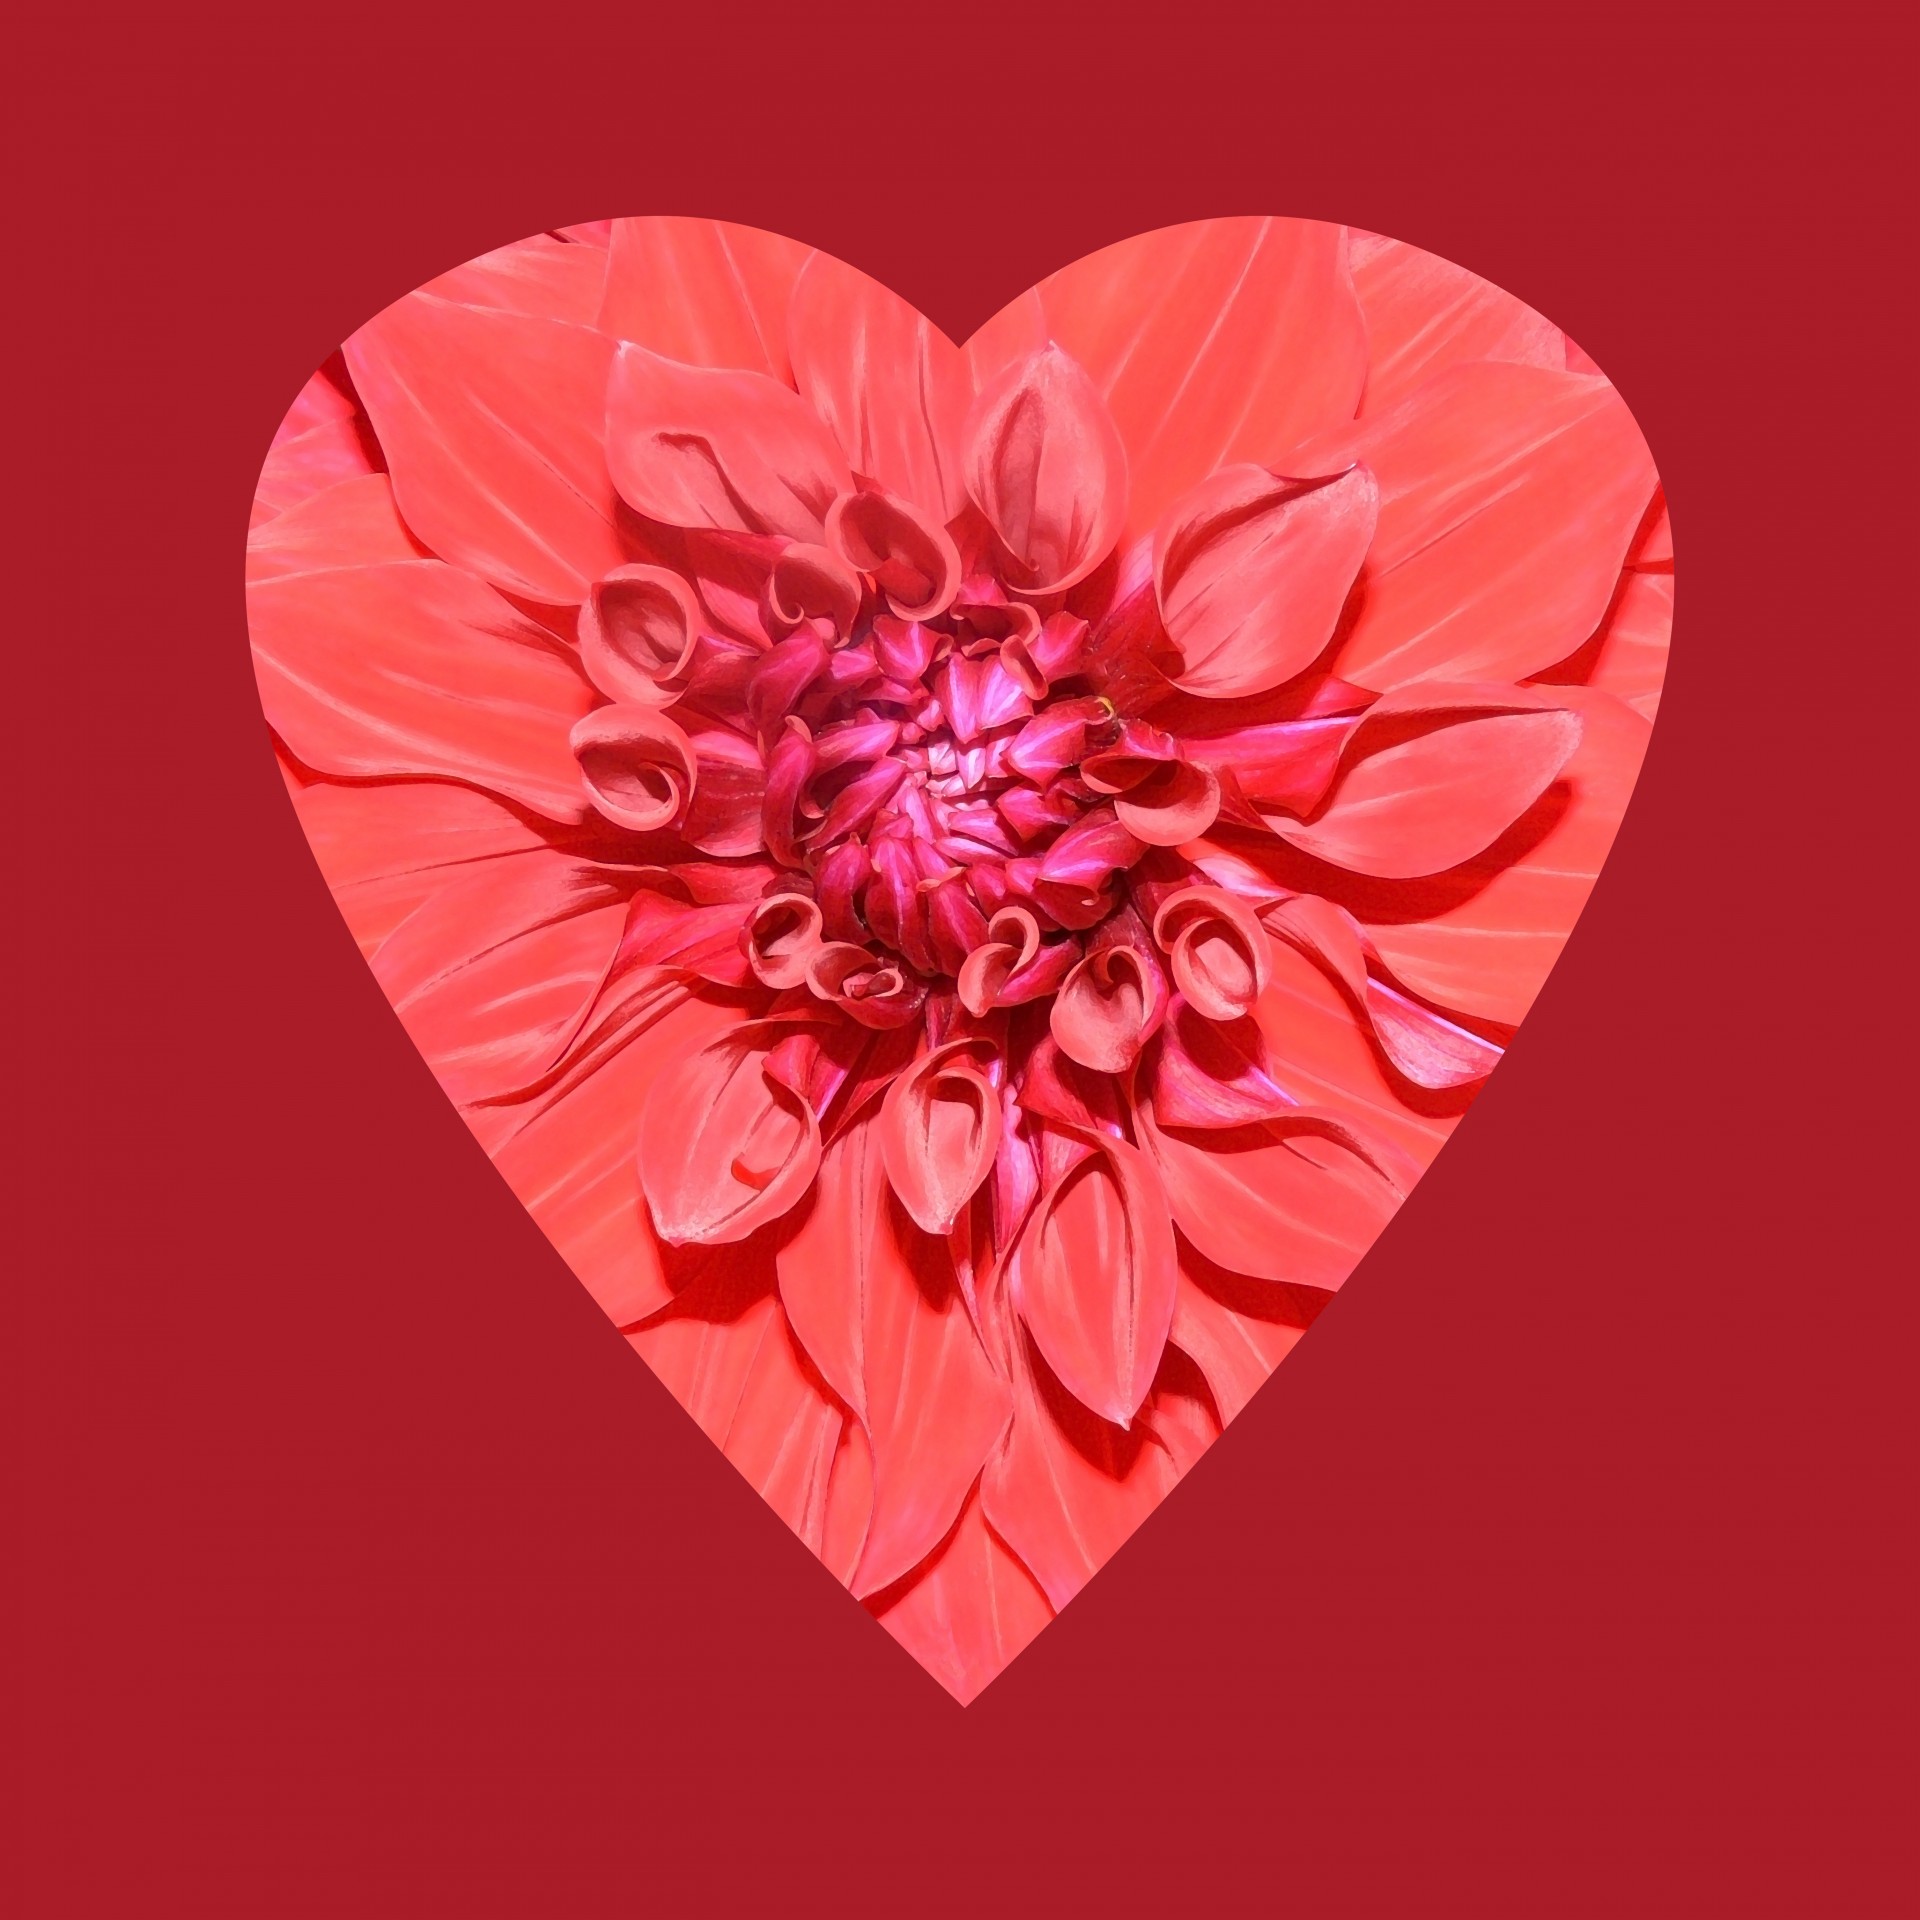 Flower Heart Red